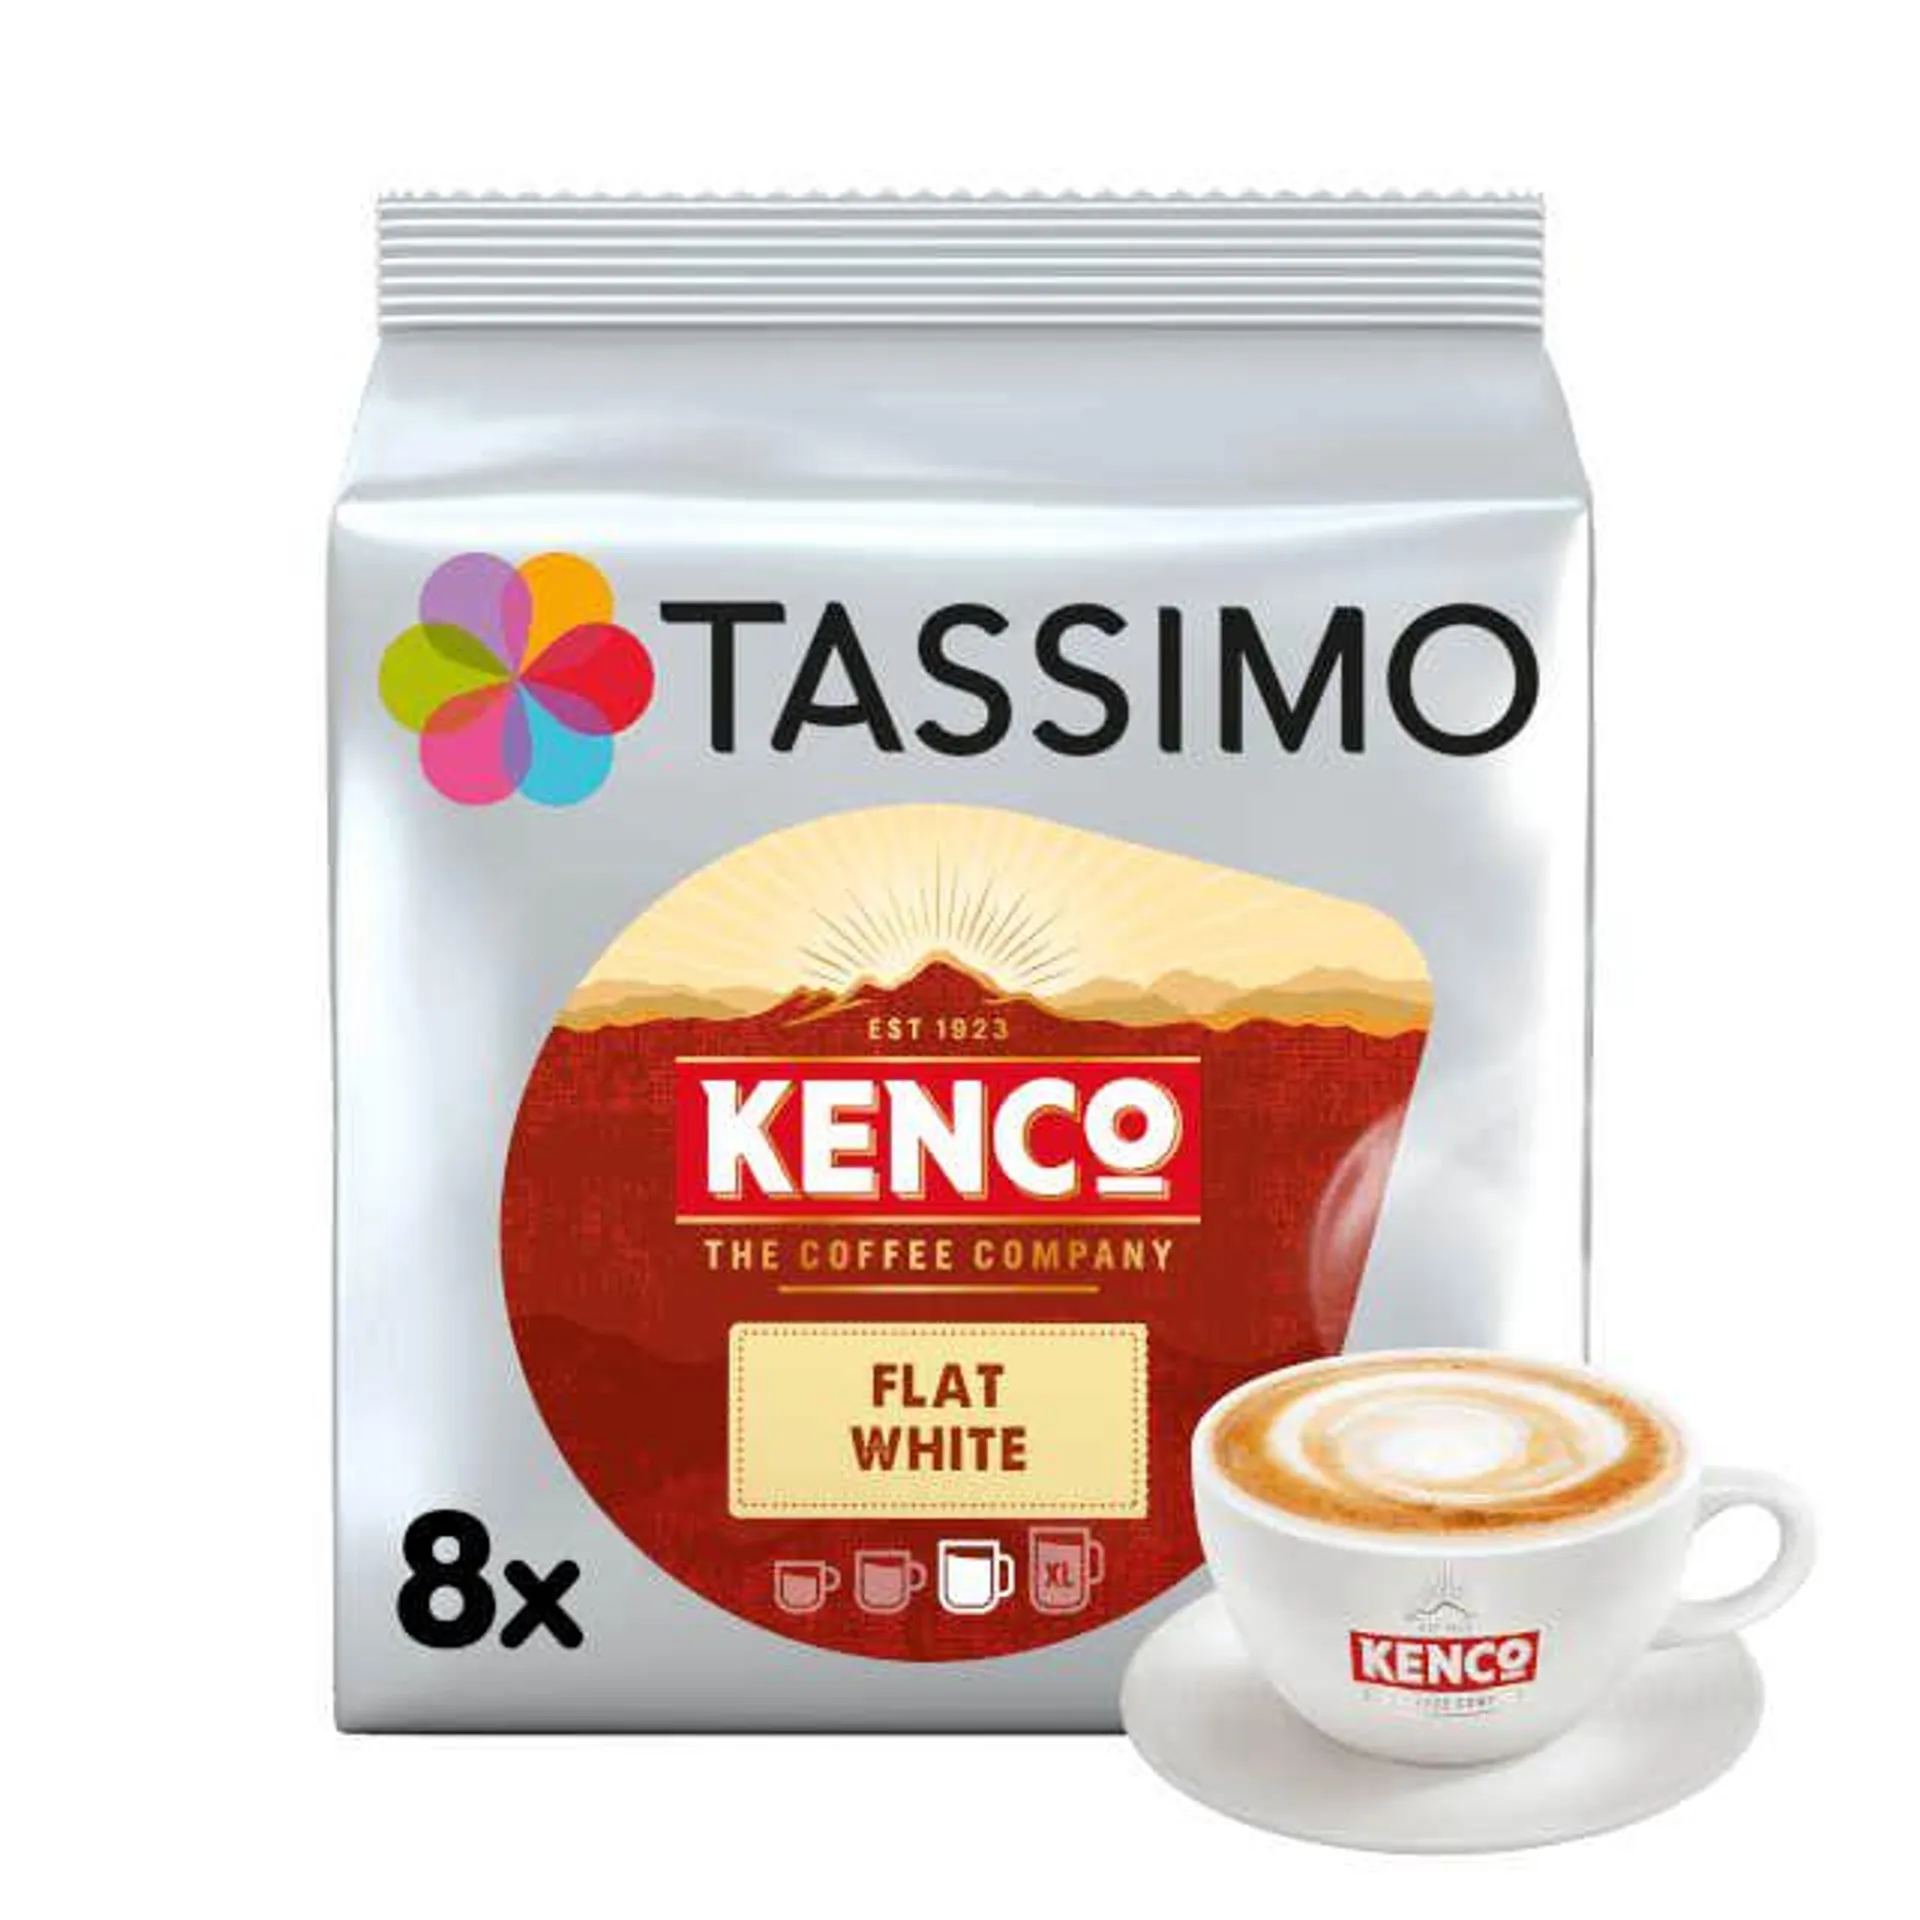 Kenco Flat White